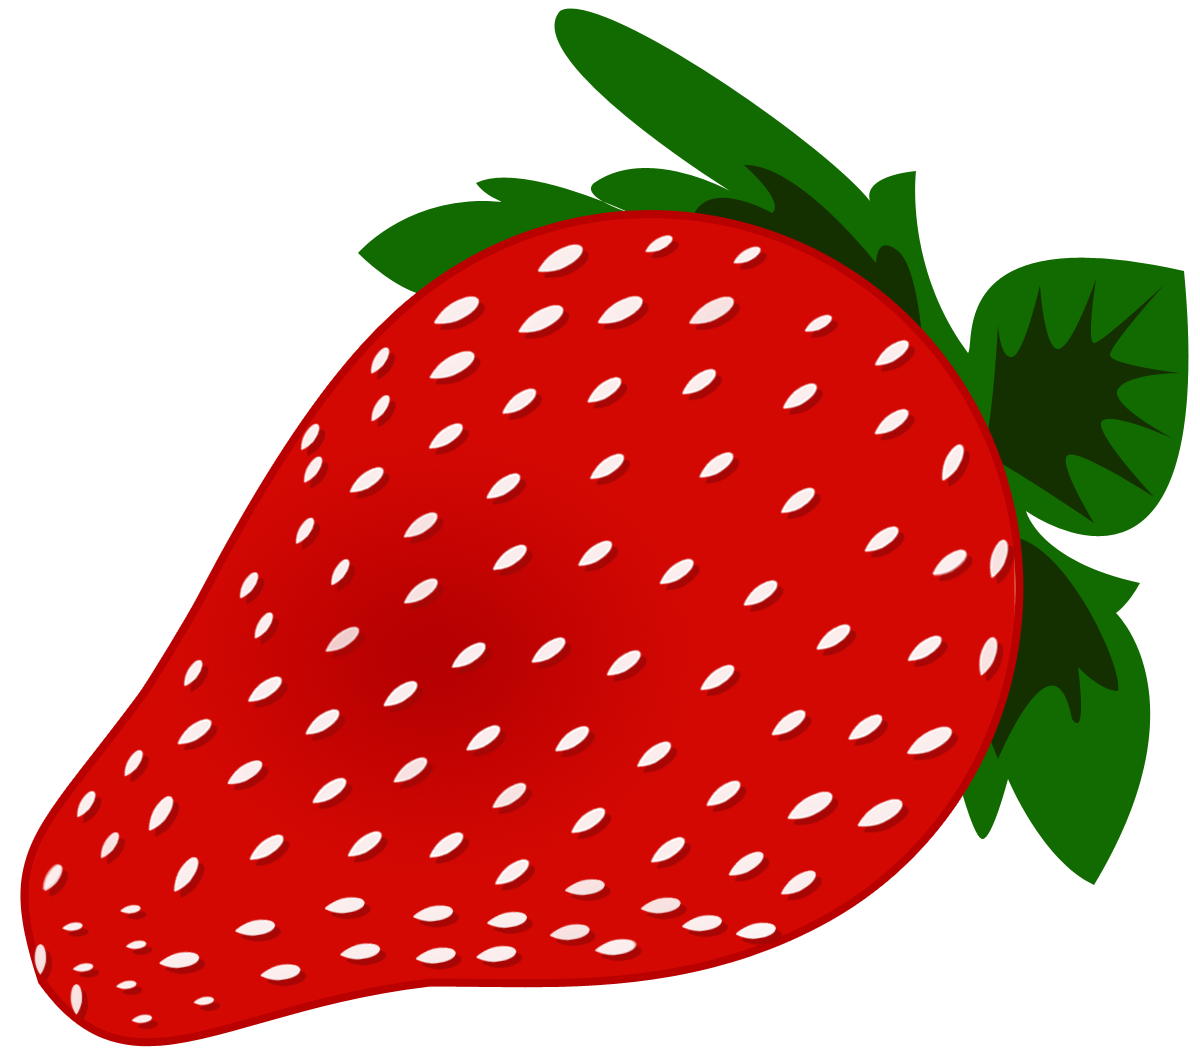 Strawberry Clip Art